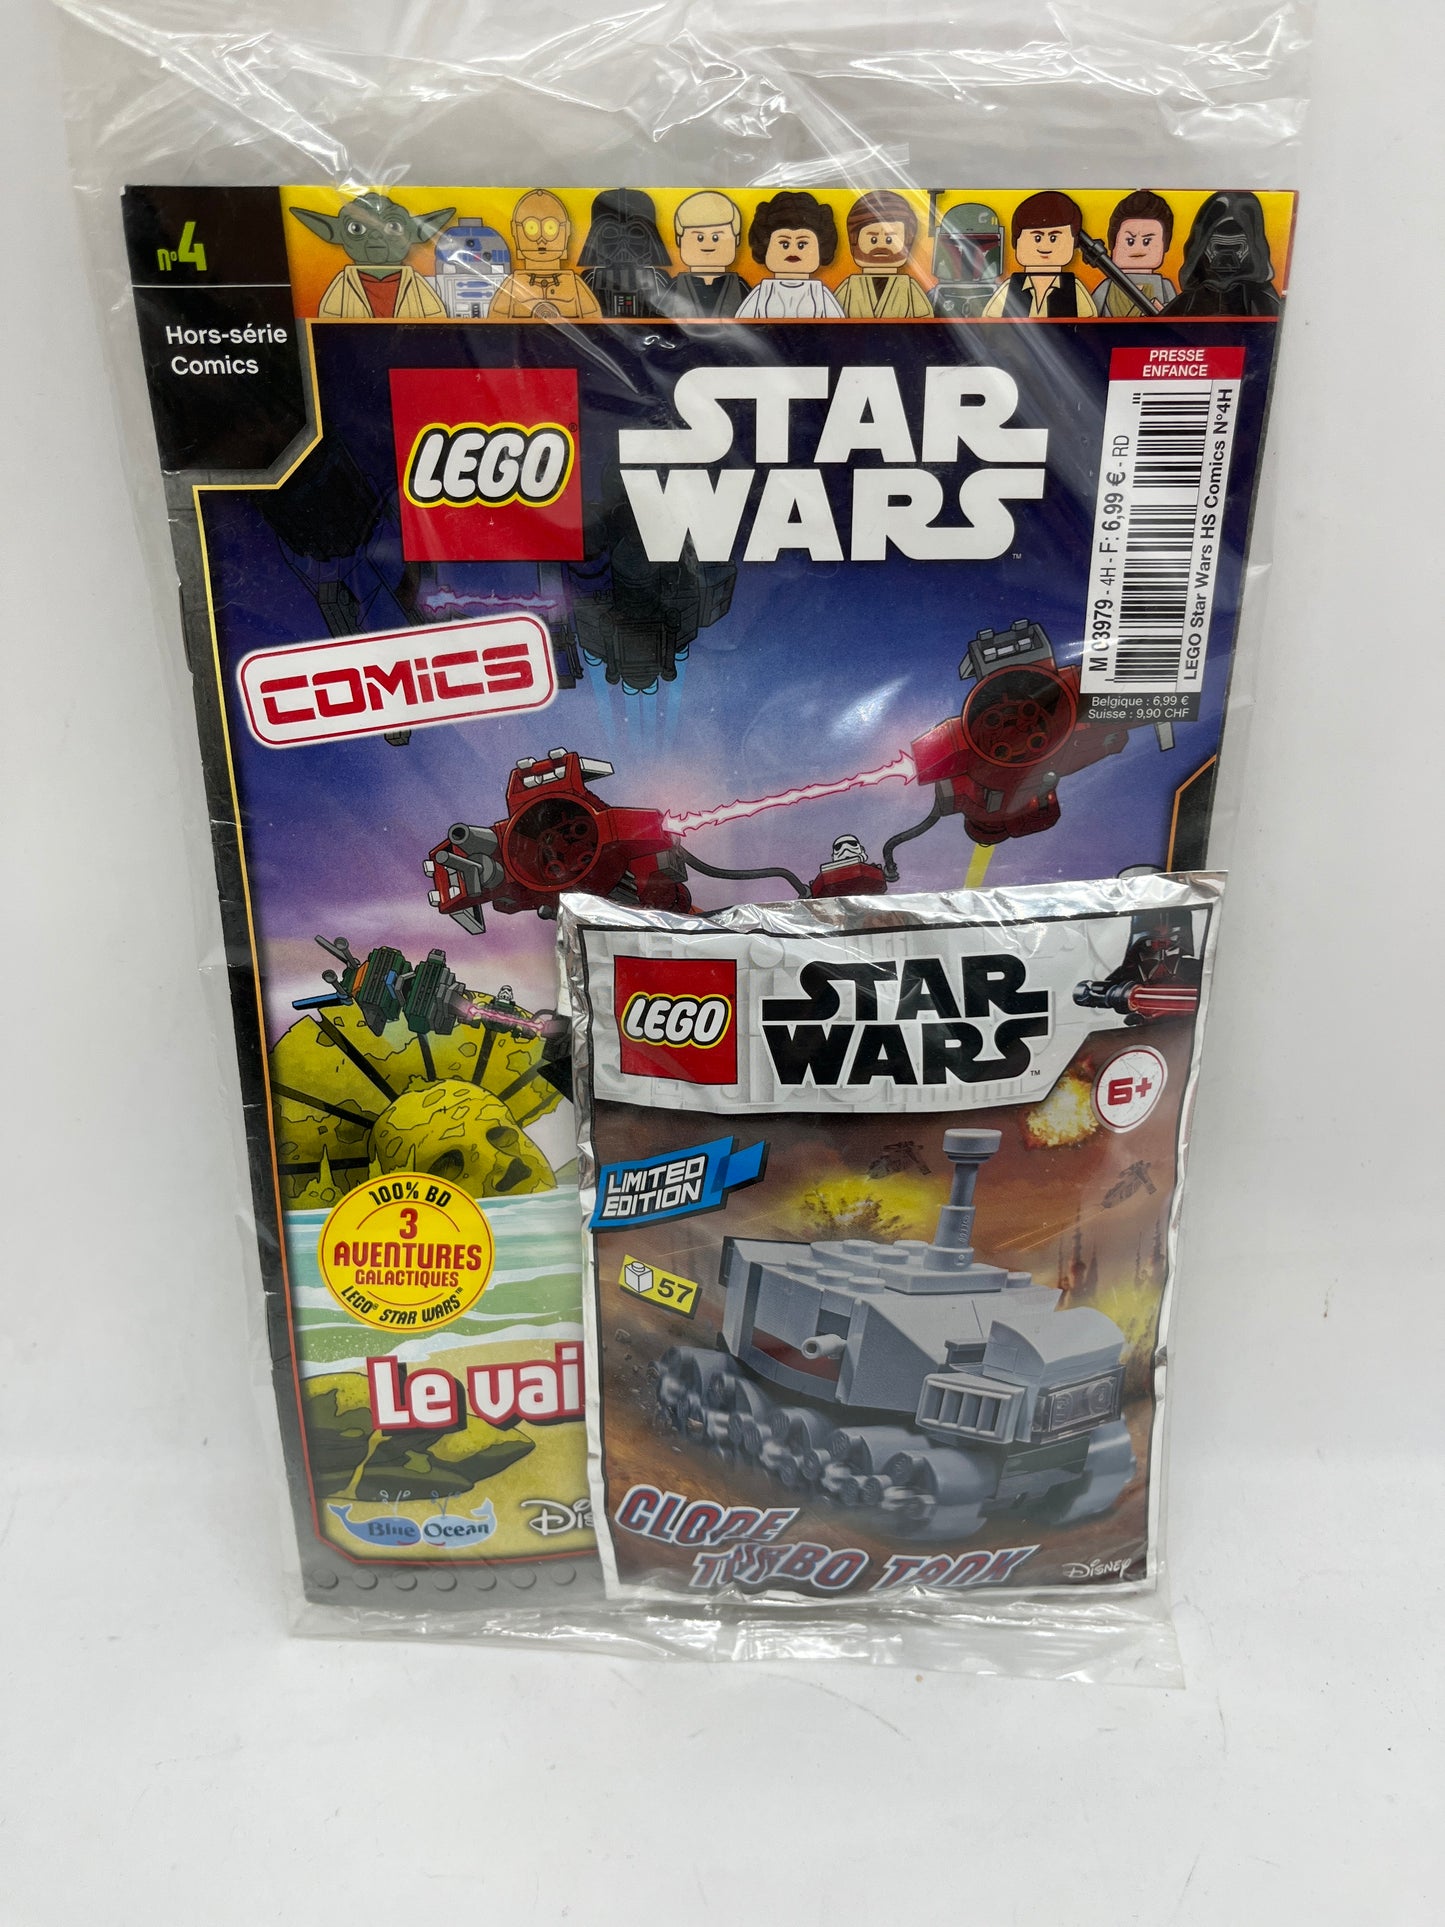 livre d’activité Magazine Lego Star Wars avec son vaisseau à monter Cline turbo Tanks Neuf sous blister